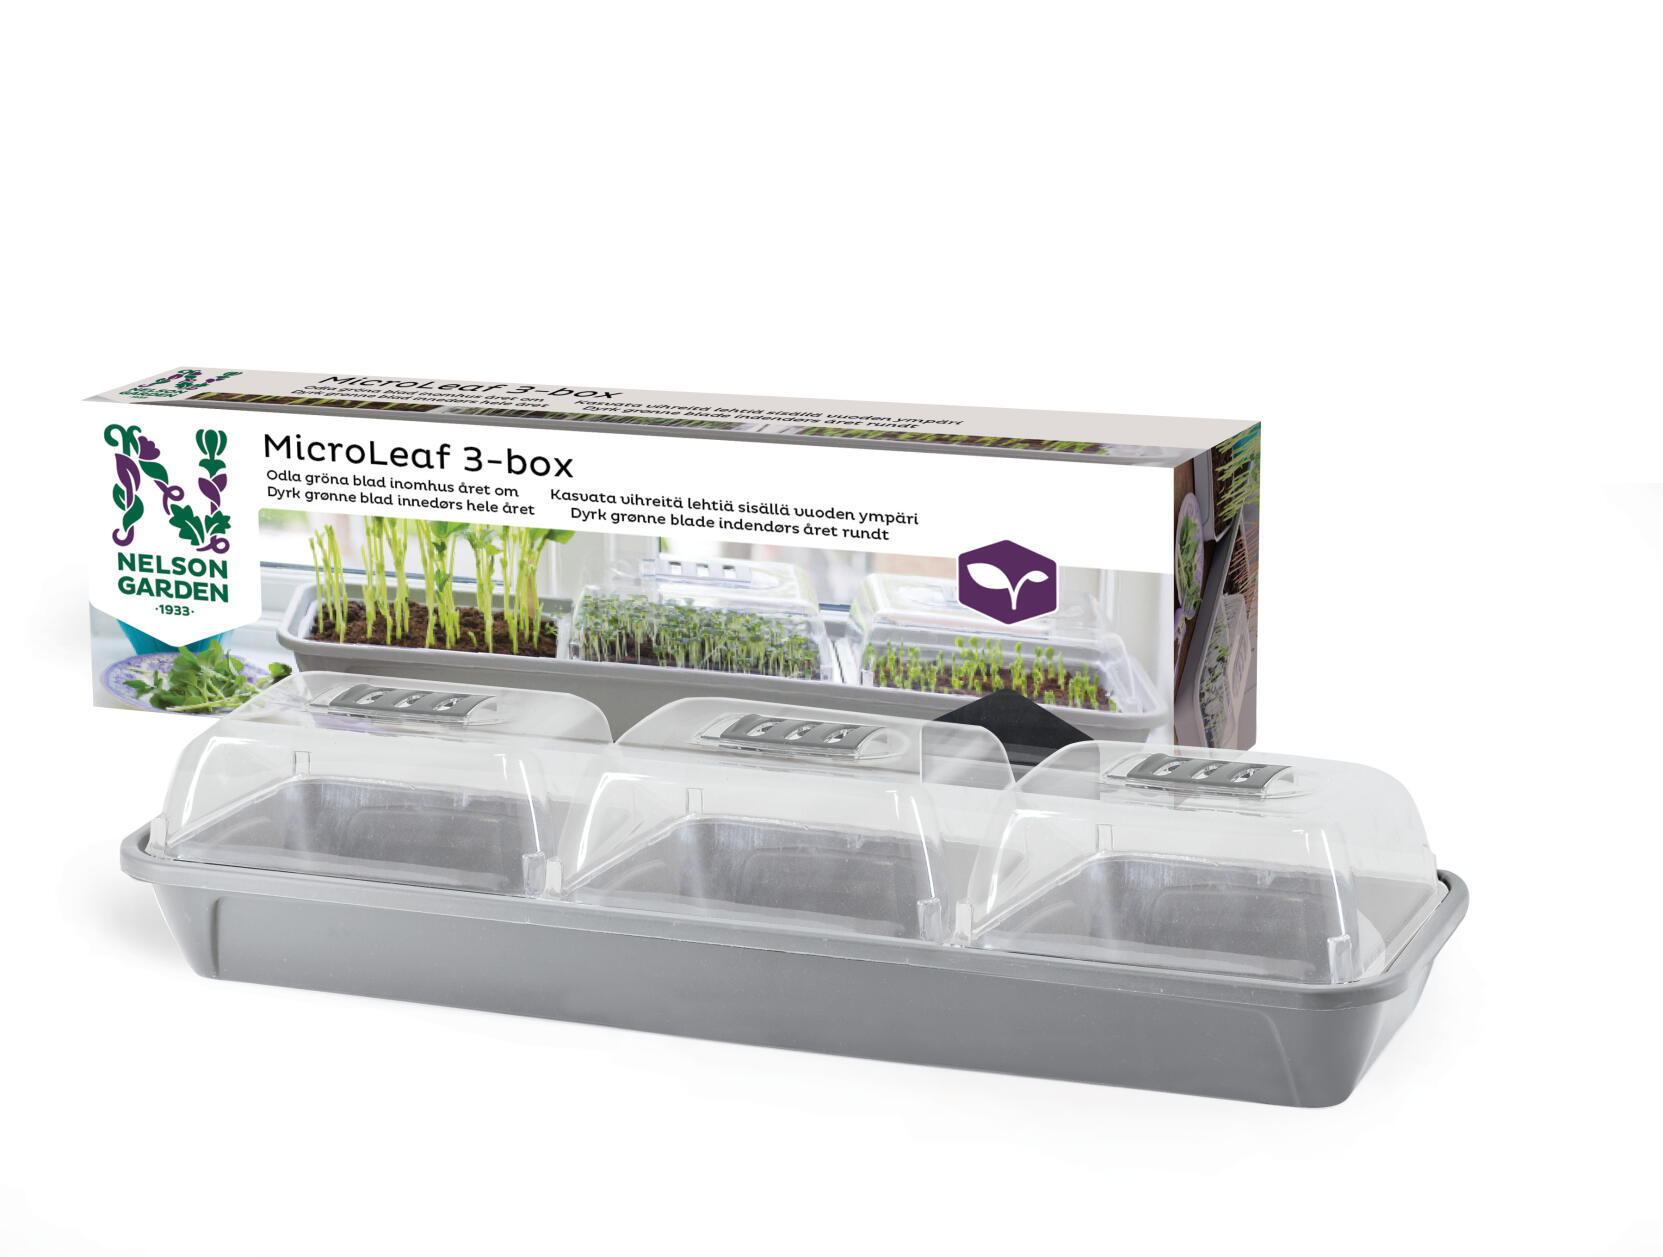 Minidrivhus Micro Leaf 3-Boks Nelson Garden